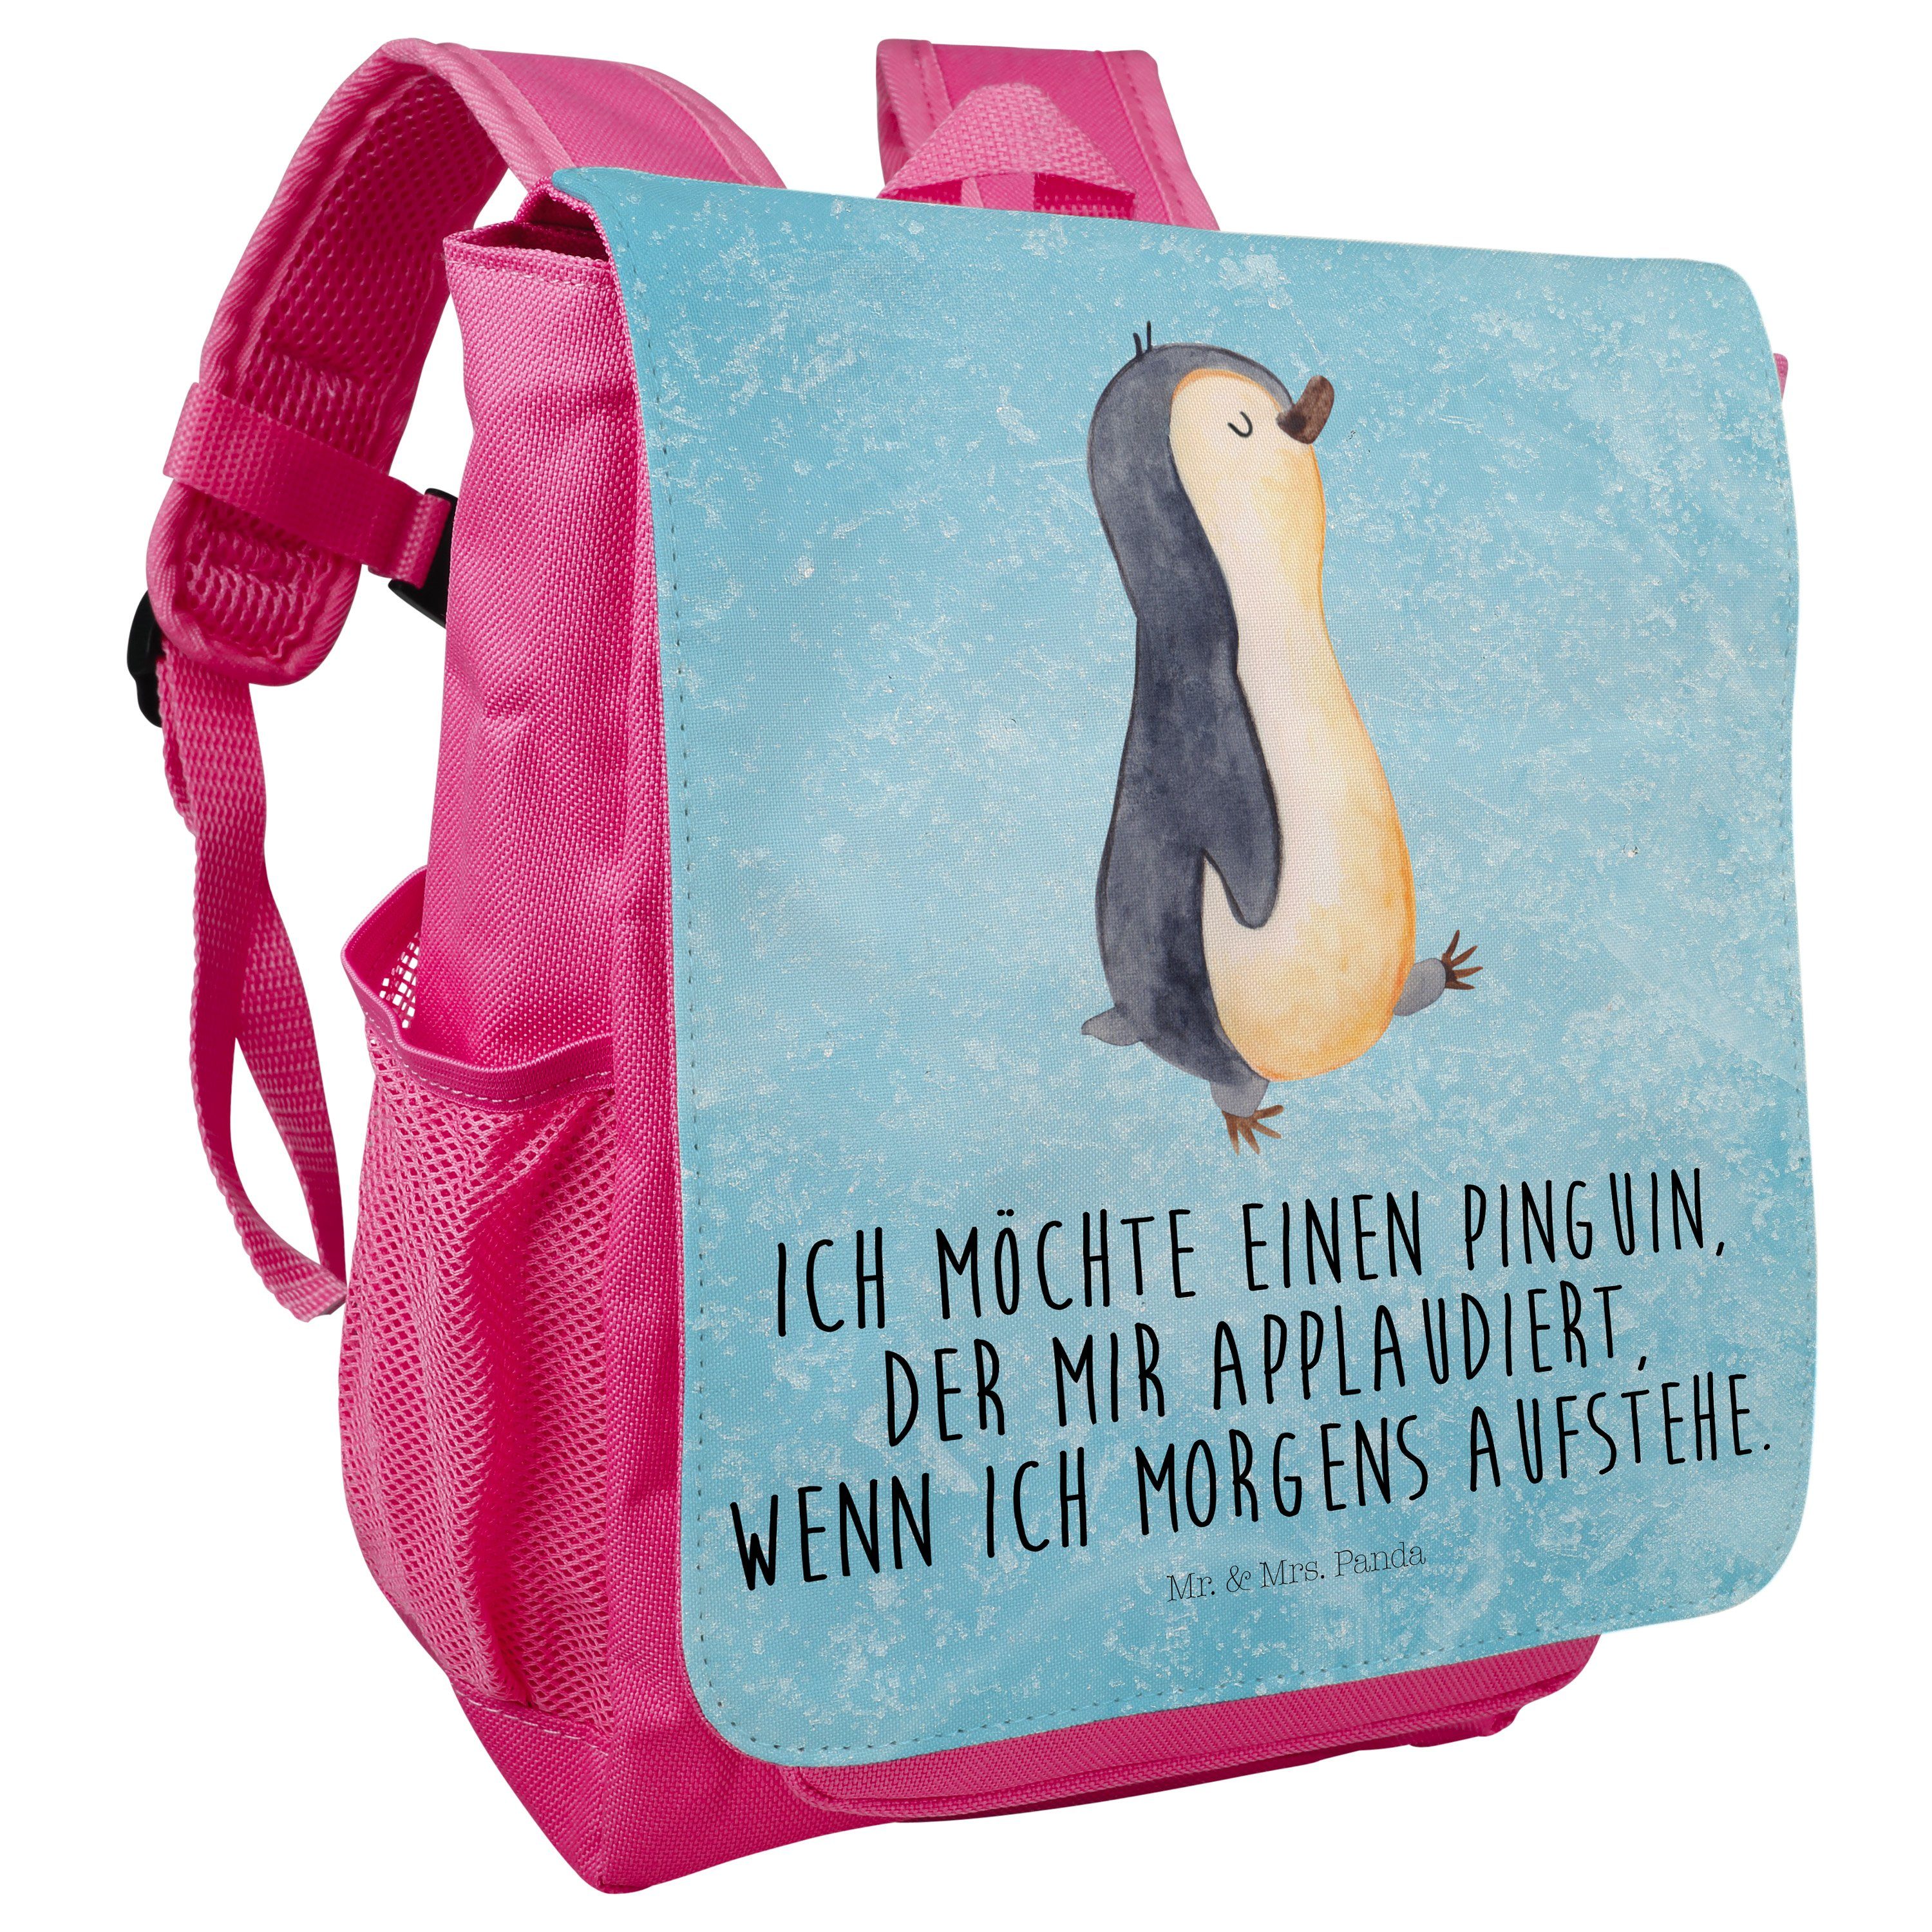 Eisblau Geschenk, Panda Mrs. & Ruc Kleiner - - Frühaufsteher, Pinguin marschierend Kinderrucksack Mr.